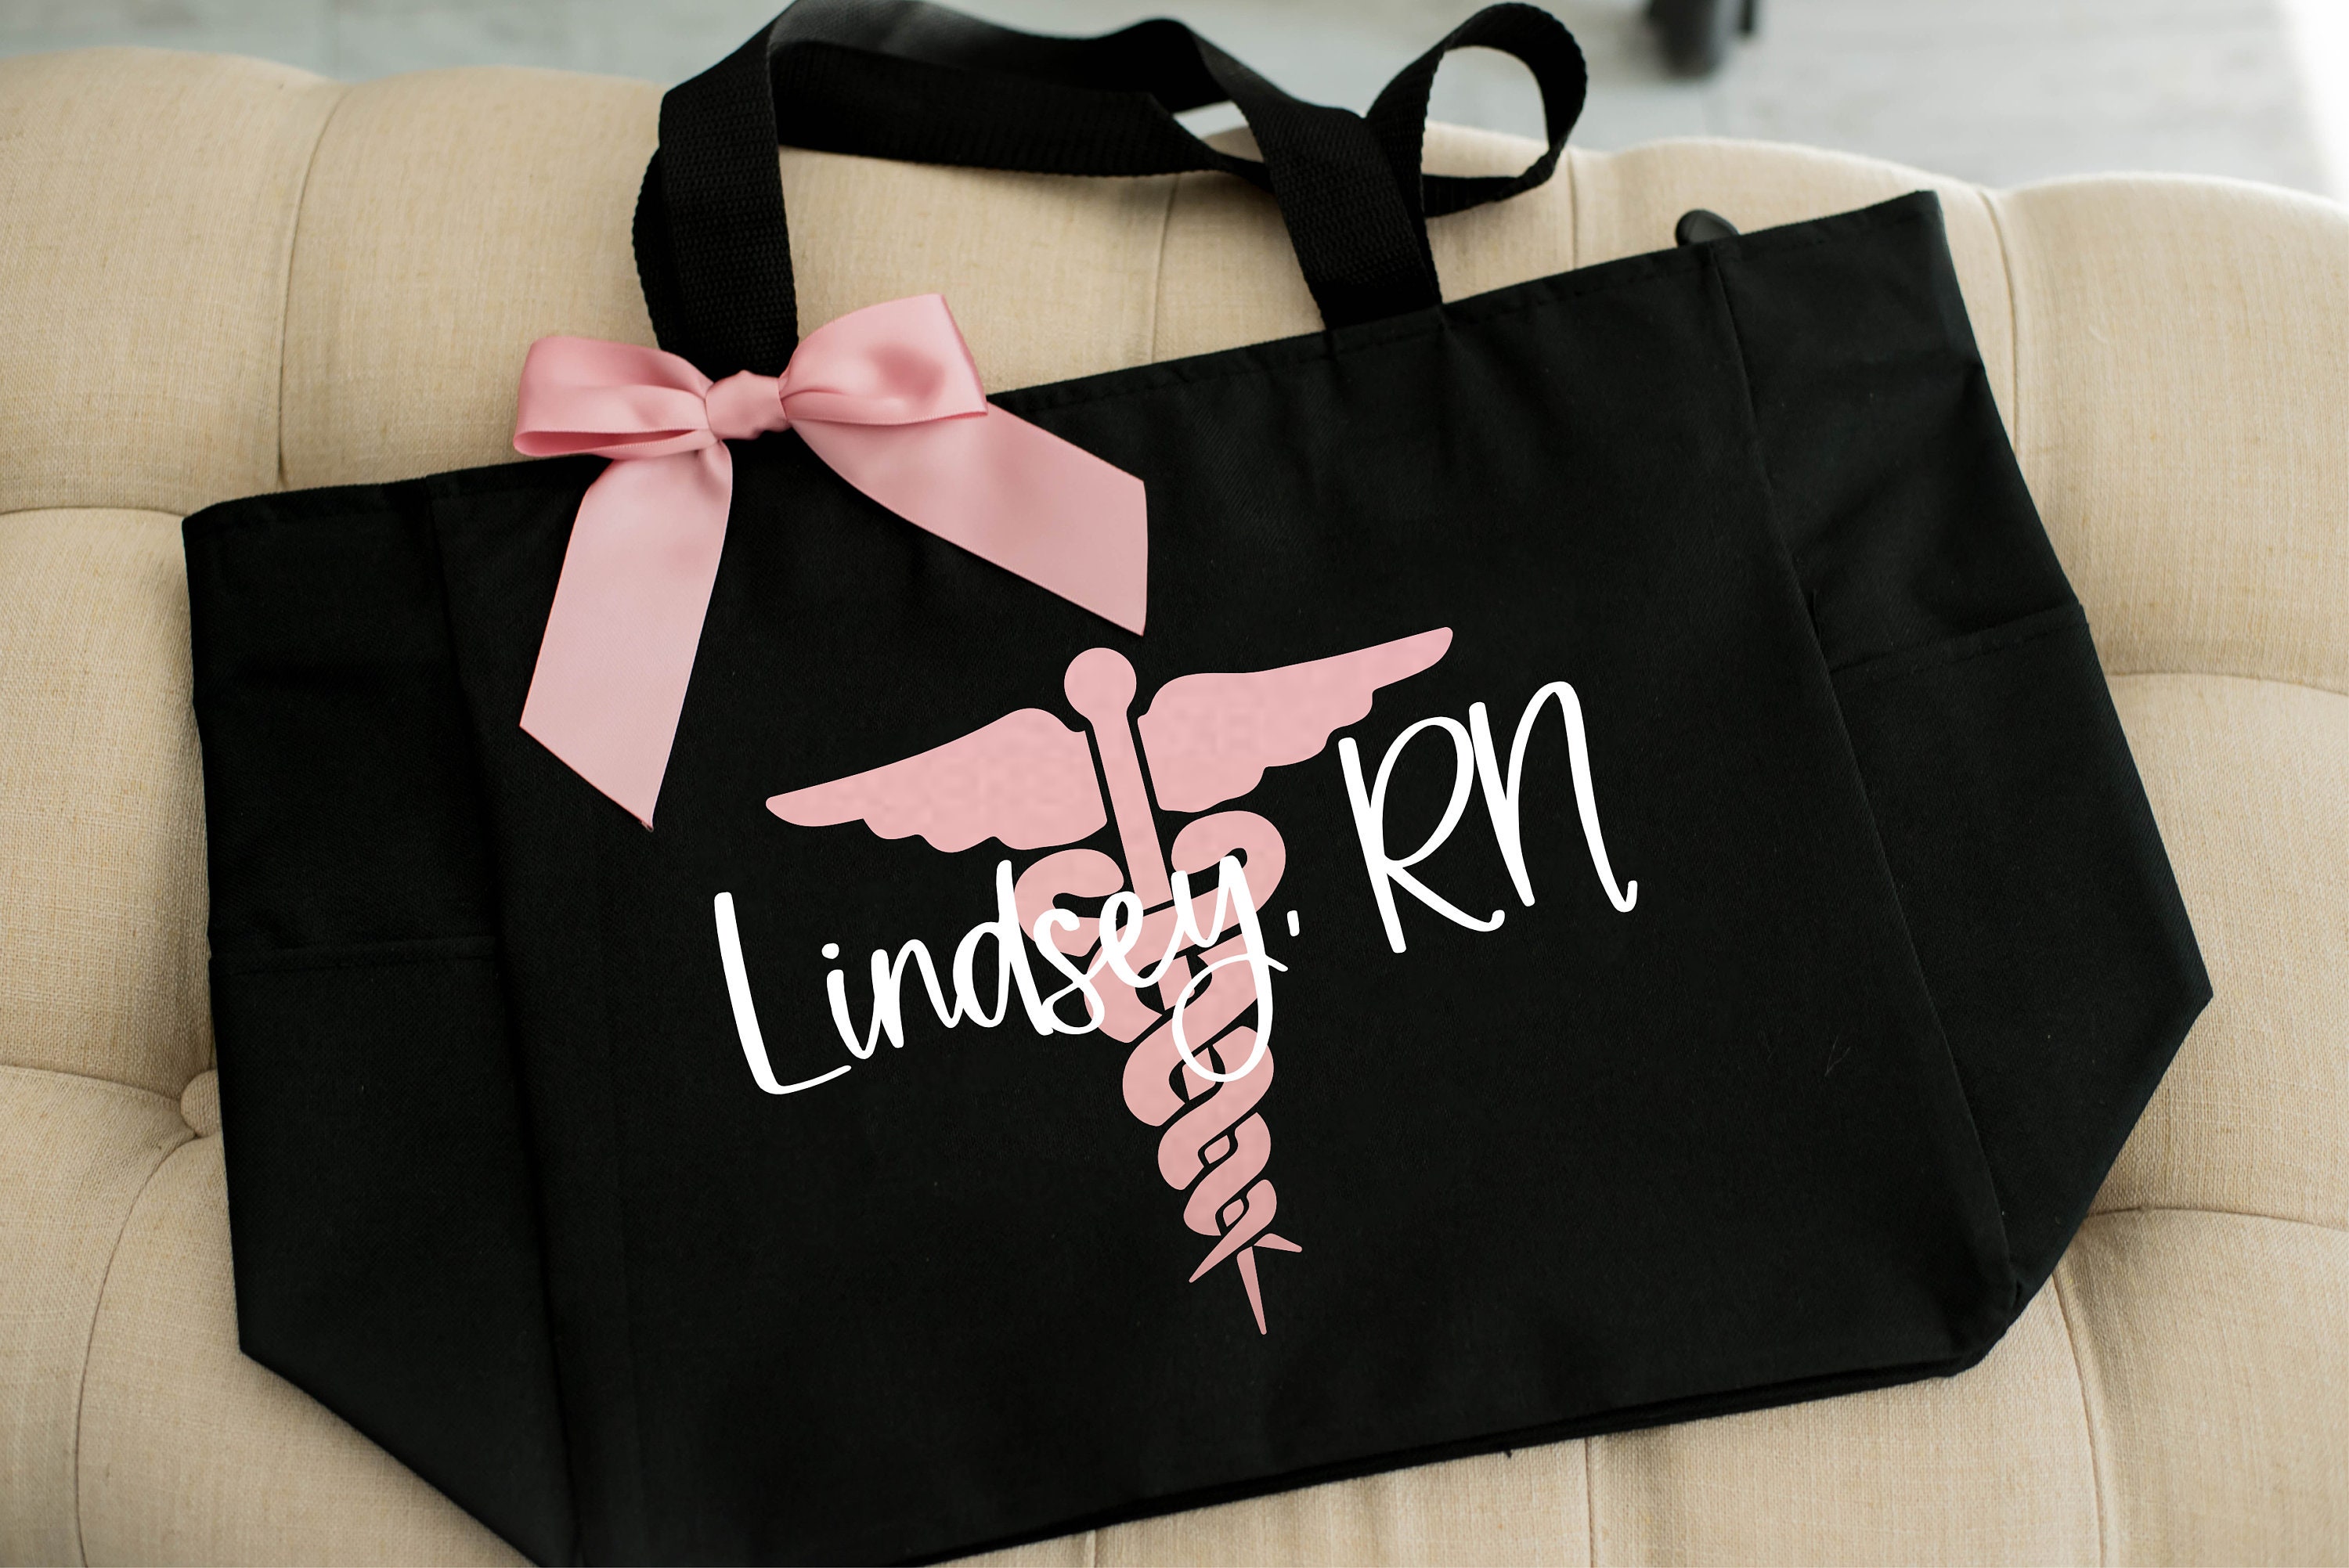 LVN Nurse Gifts Licensed Vocational Nurse Makeup LVN Nurse Gifts Makeup Bag